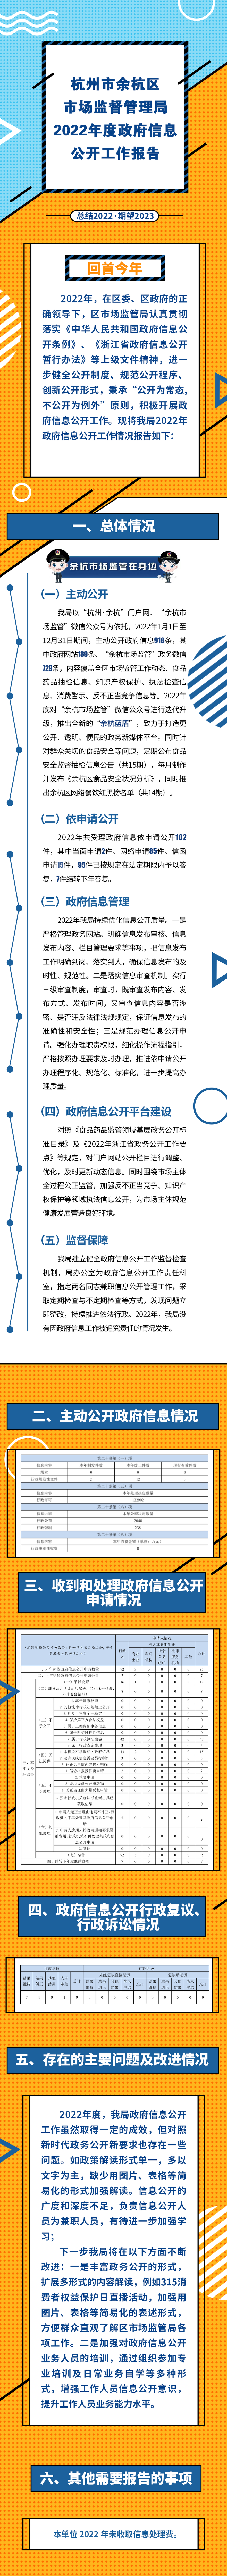 杭州市余杭区市场监管局2022年度政府信息公开工作报告（图解版）.png